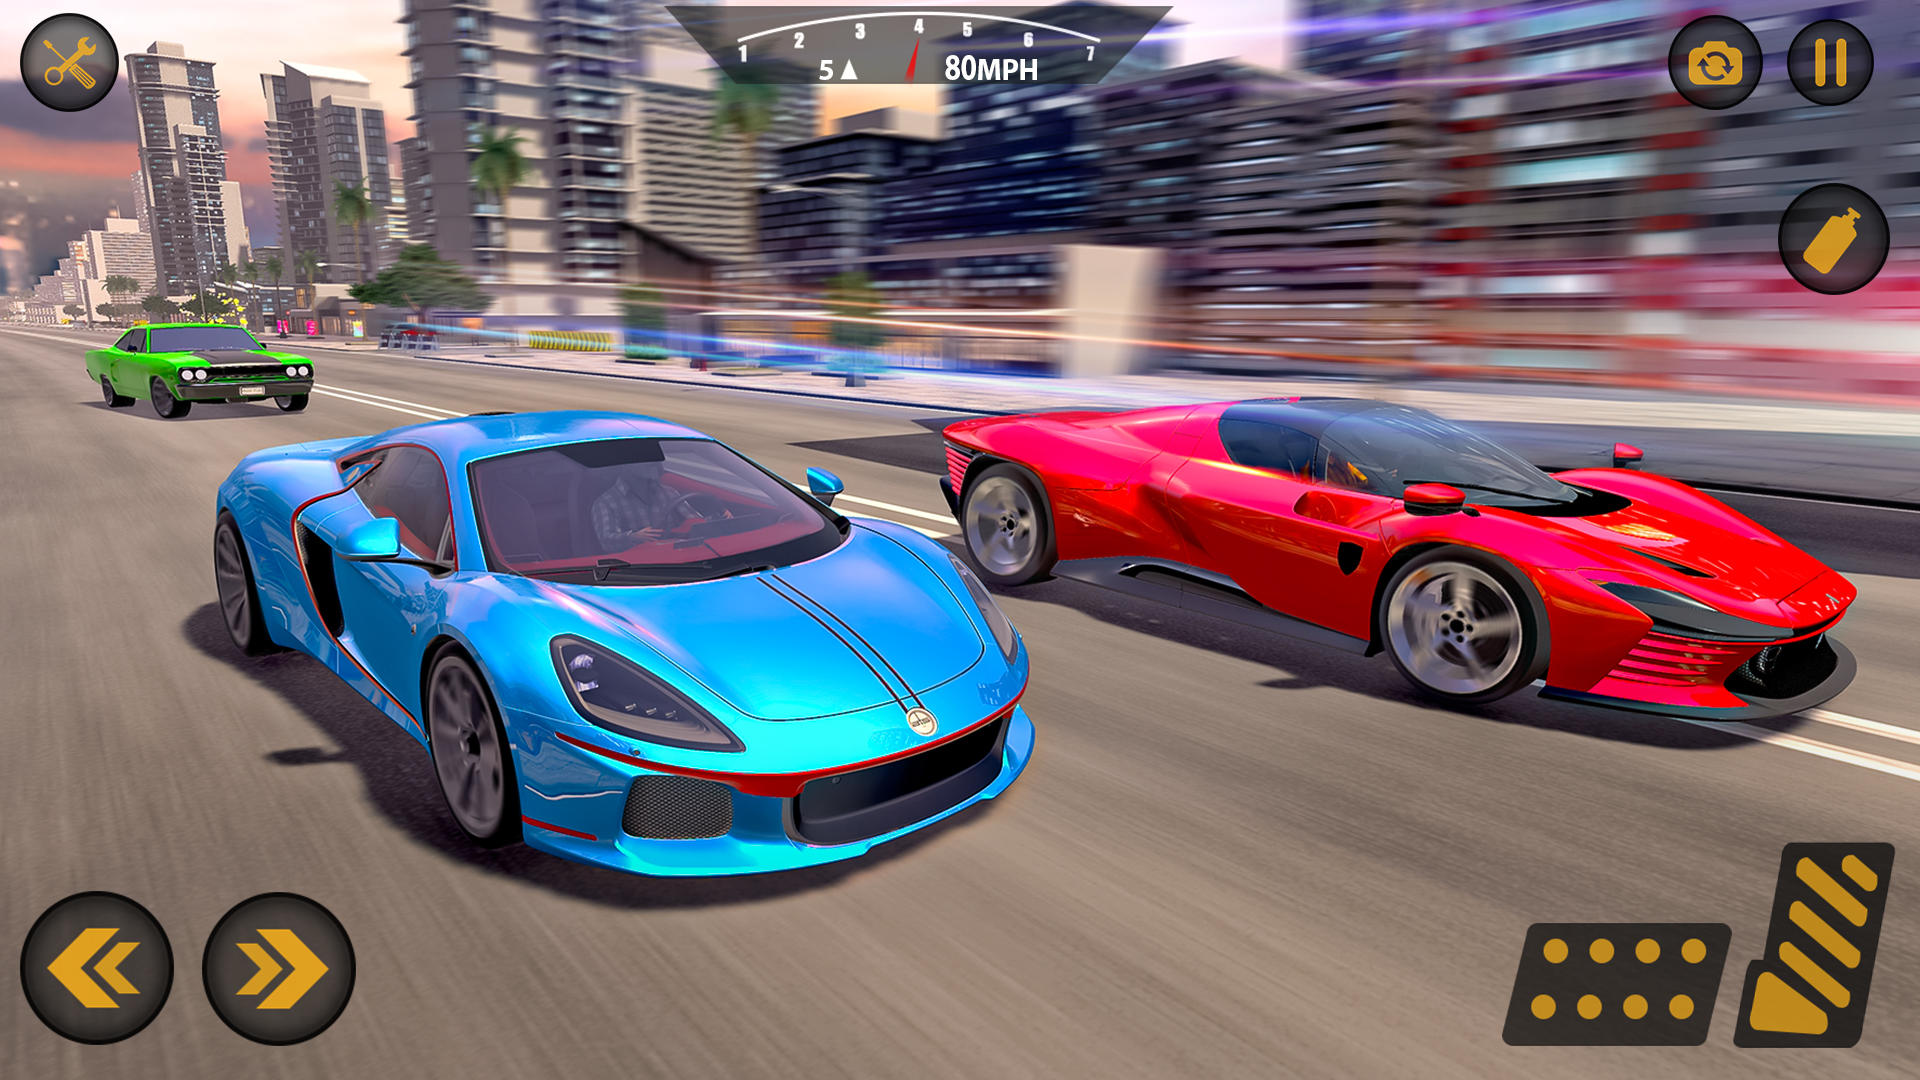 Screenshot 1 of jogos de condução 5.0